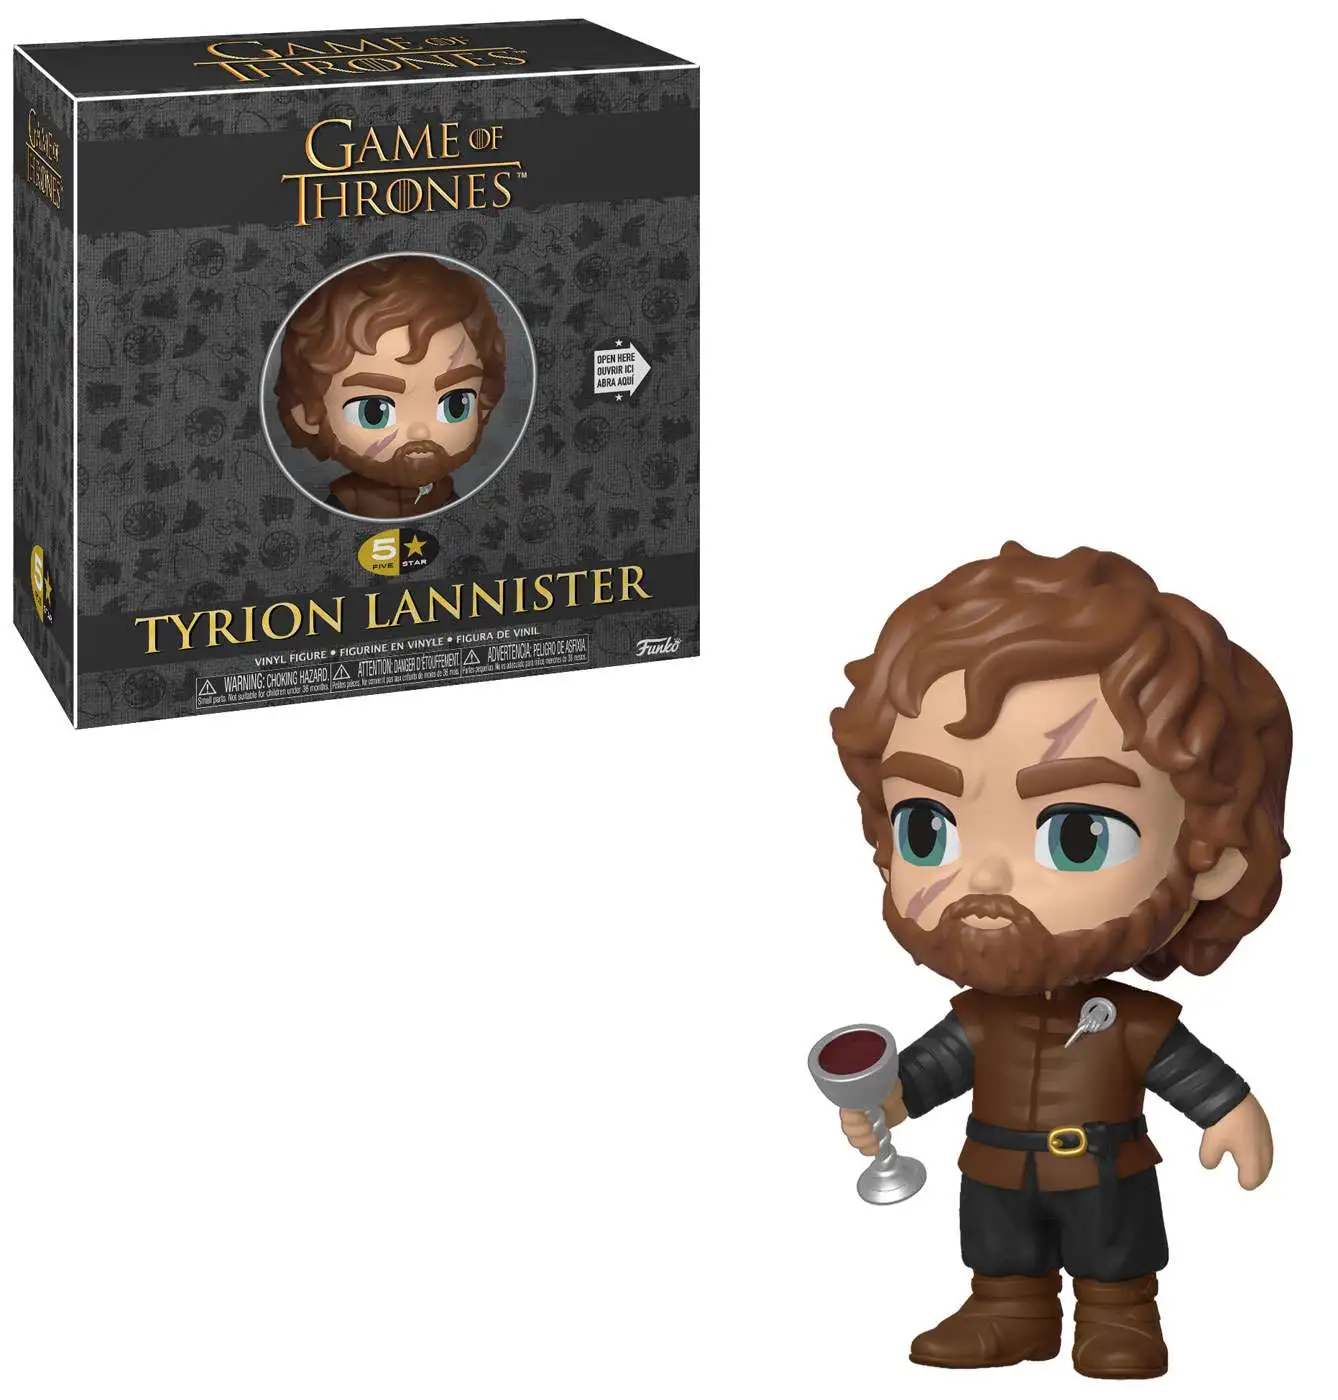 Funko Pop Game of Thrones Tyrion Lannister sentado en trono de hierro #71 